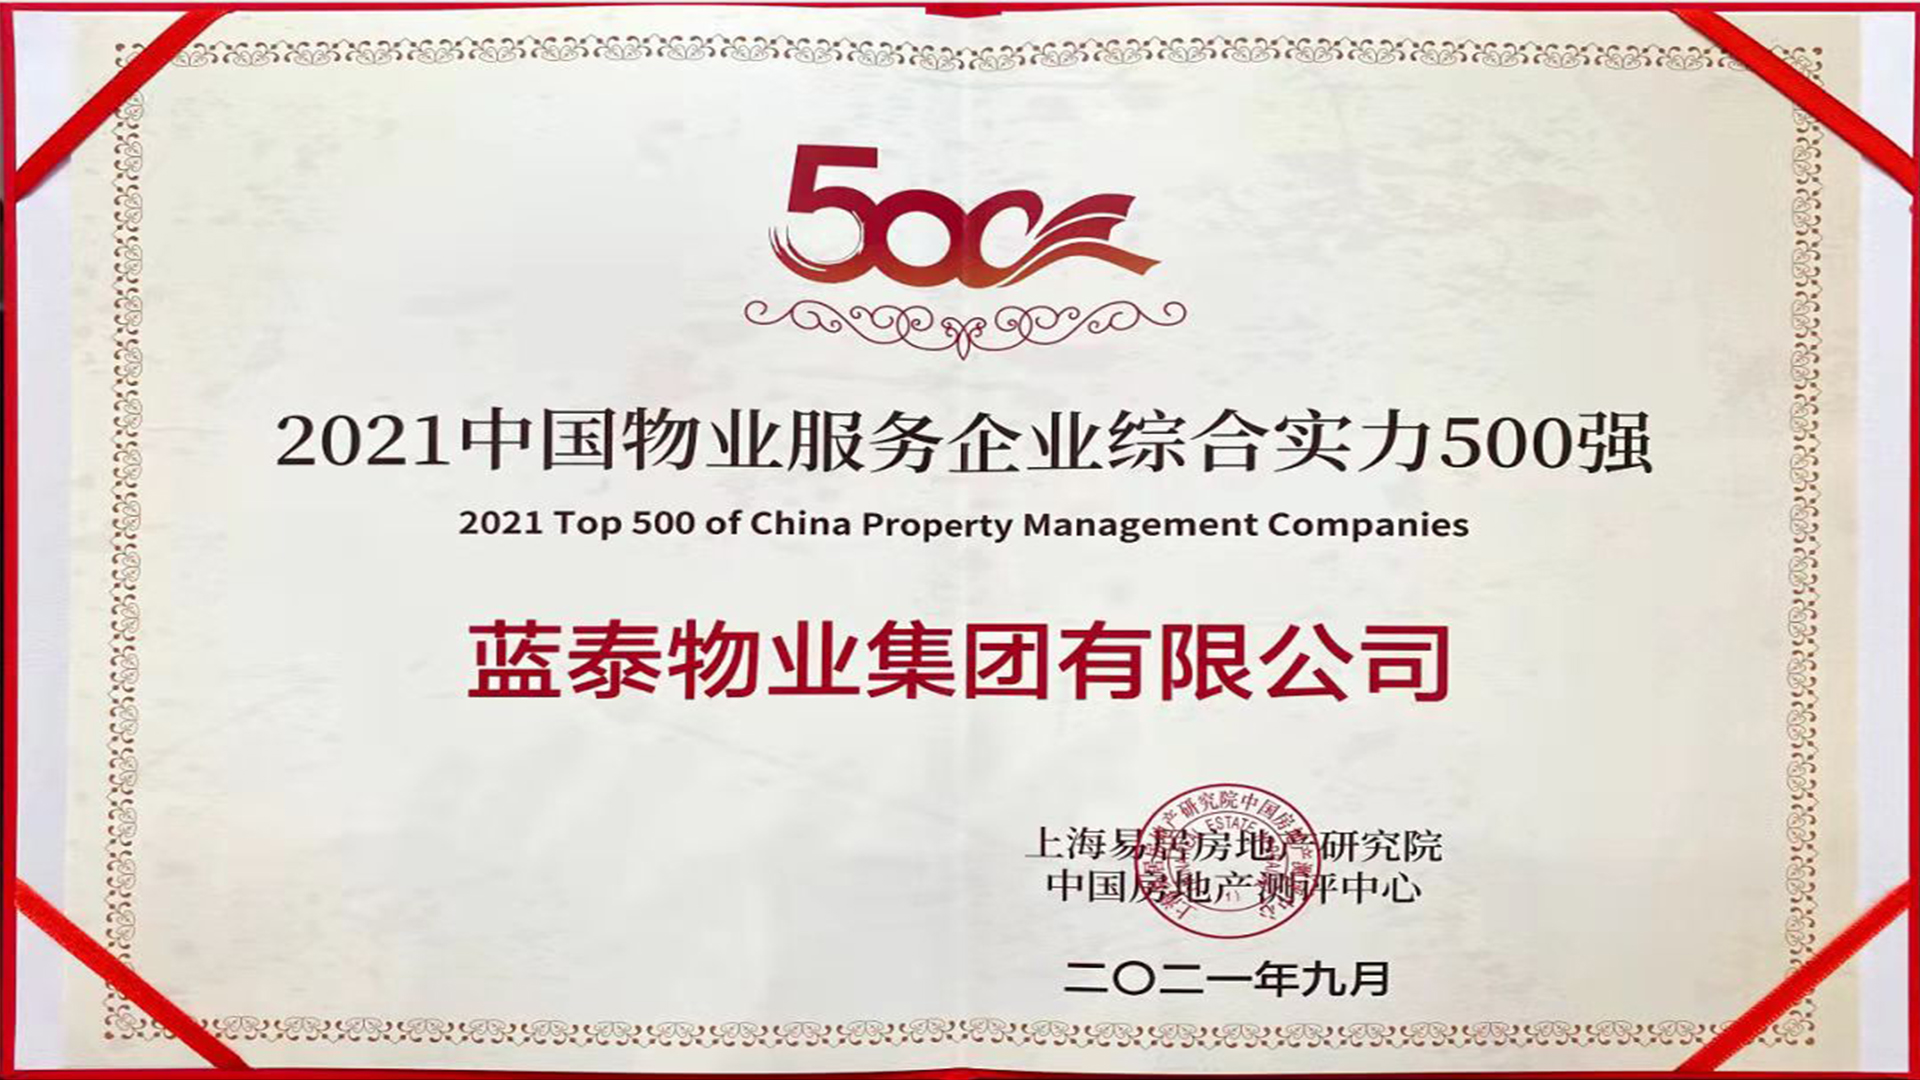 藍泰物業集團有限公司榮獲“2021中國物業服務企業綜合實力500強”